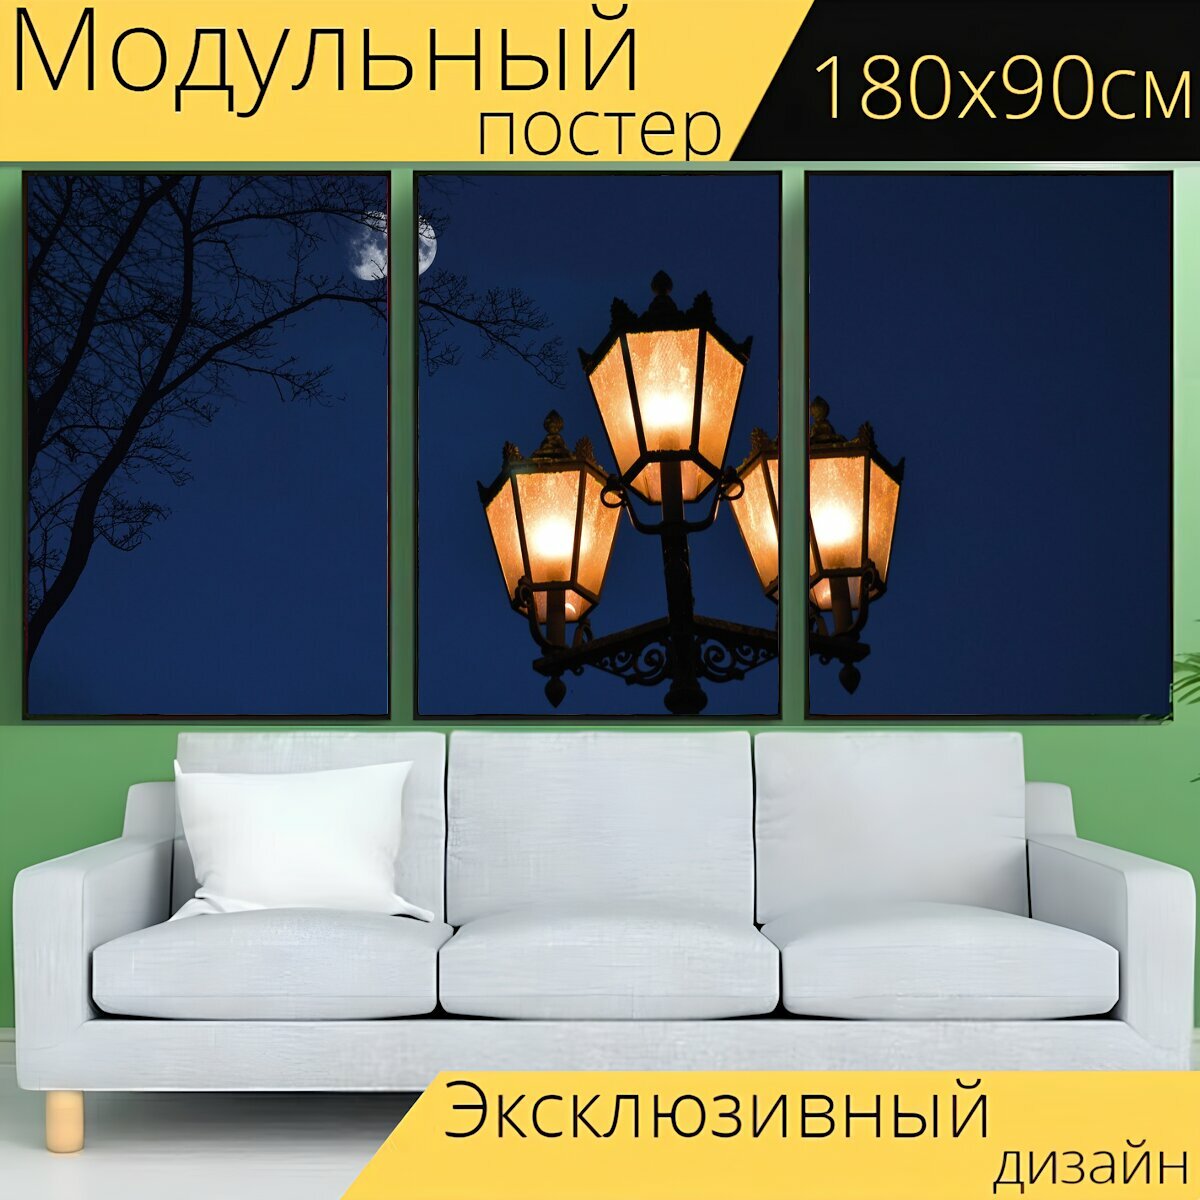 Модульный постер "Уличный фонарь, исторический, свет" 180 x 90 см. для интерьера